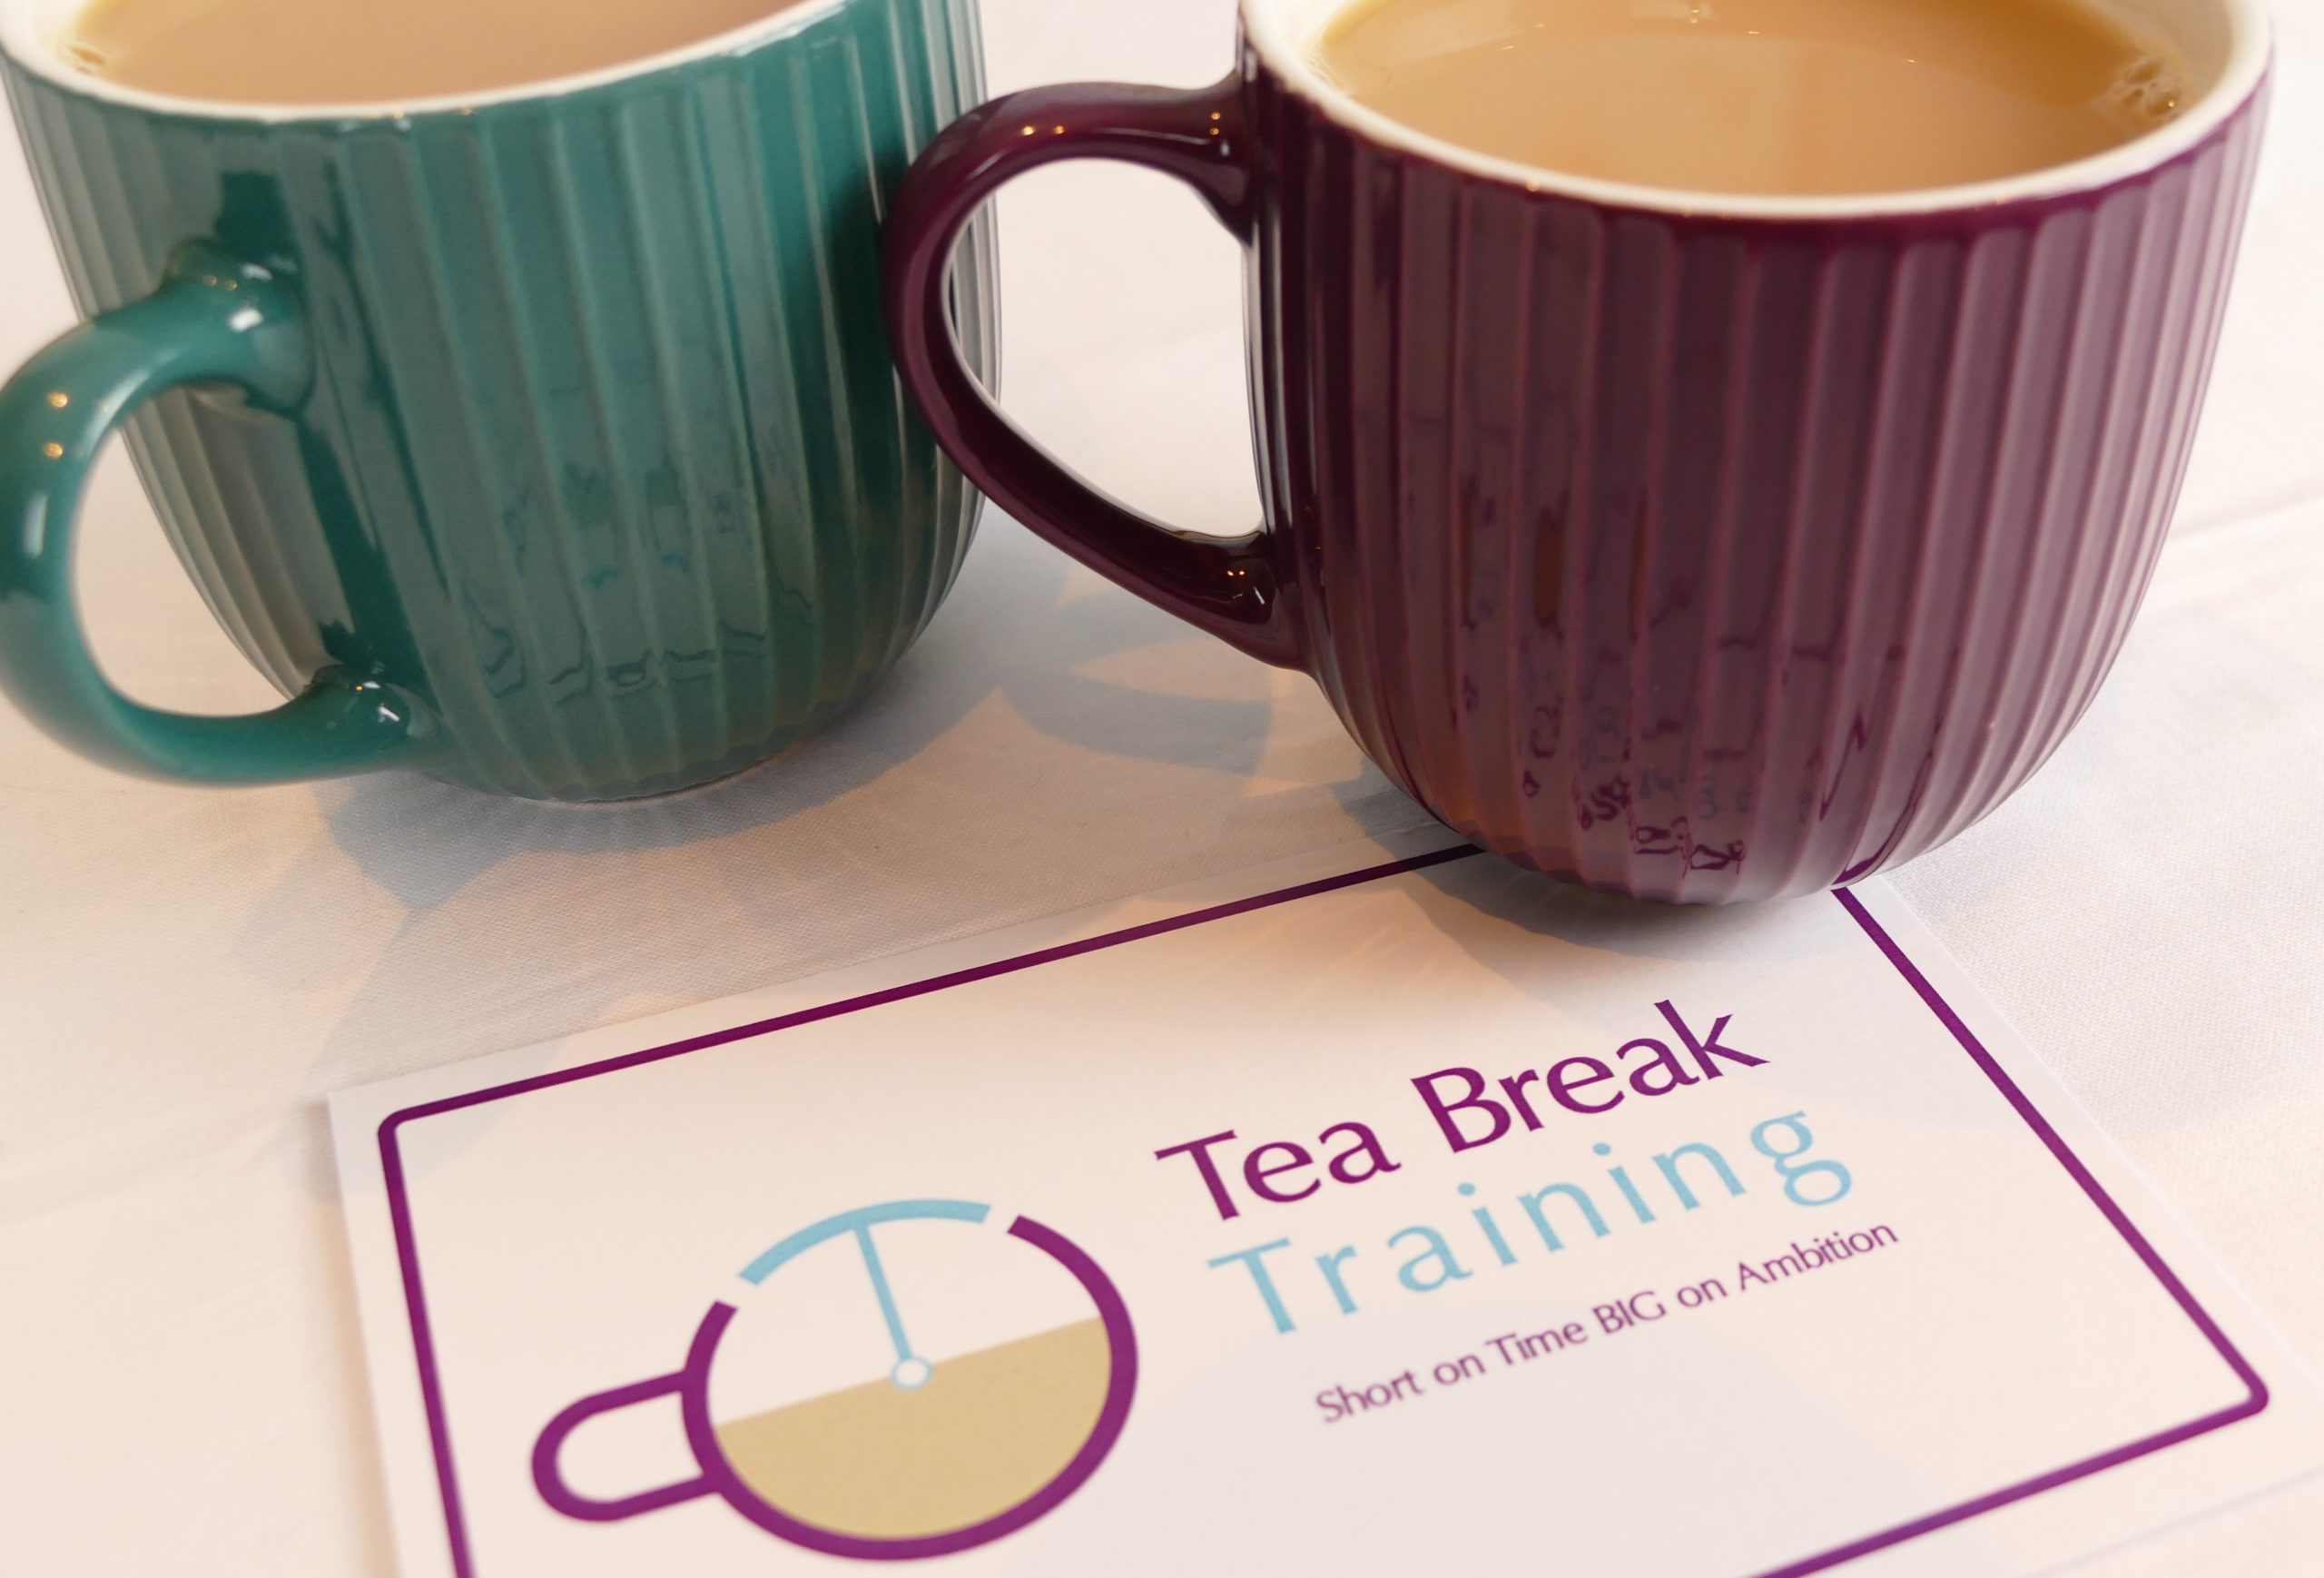 Mugs of Tea - Tea Break Training